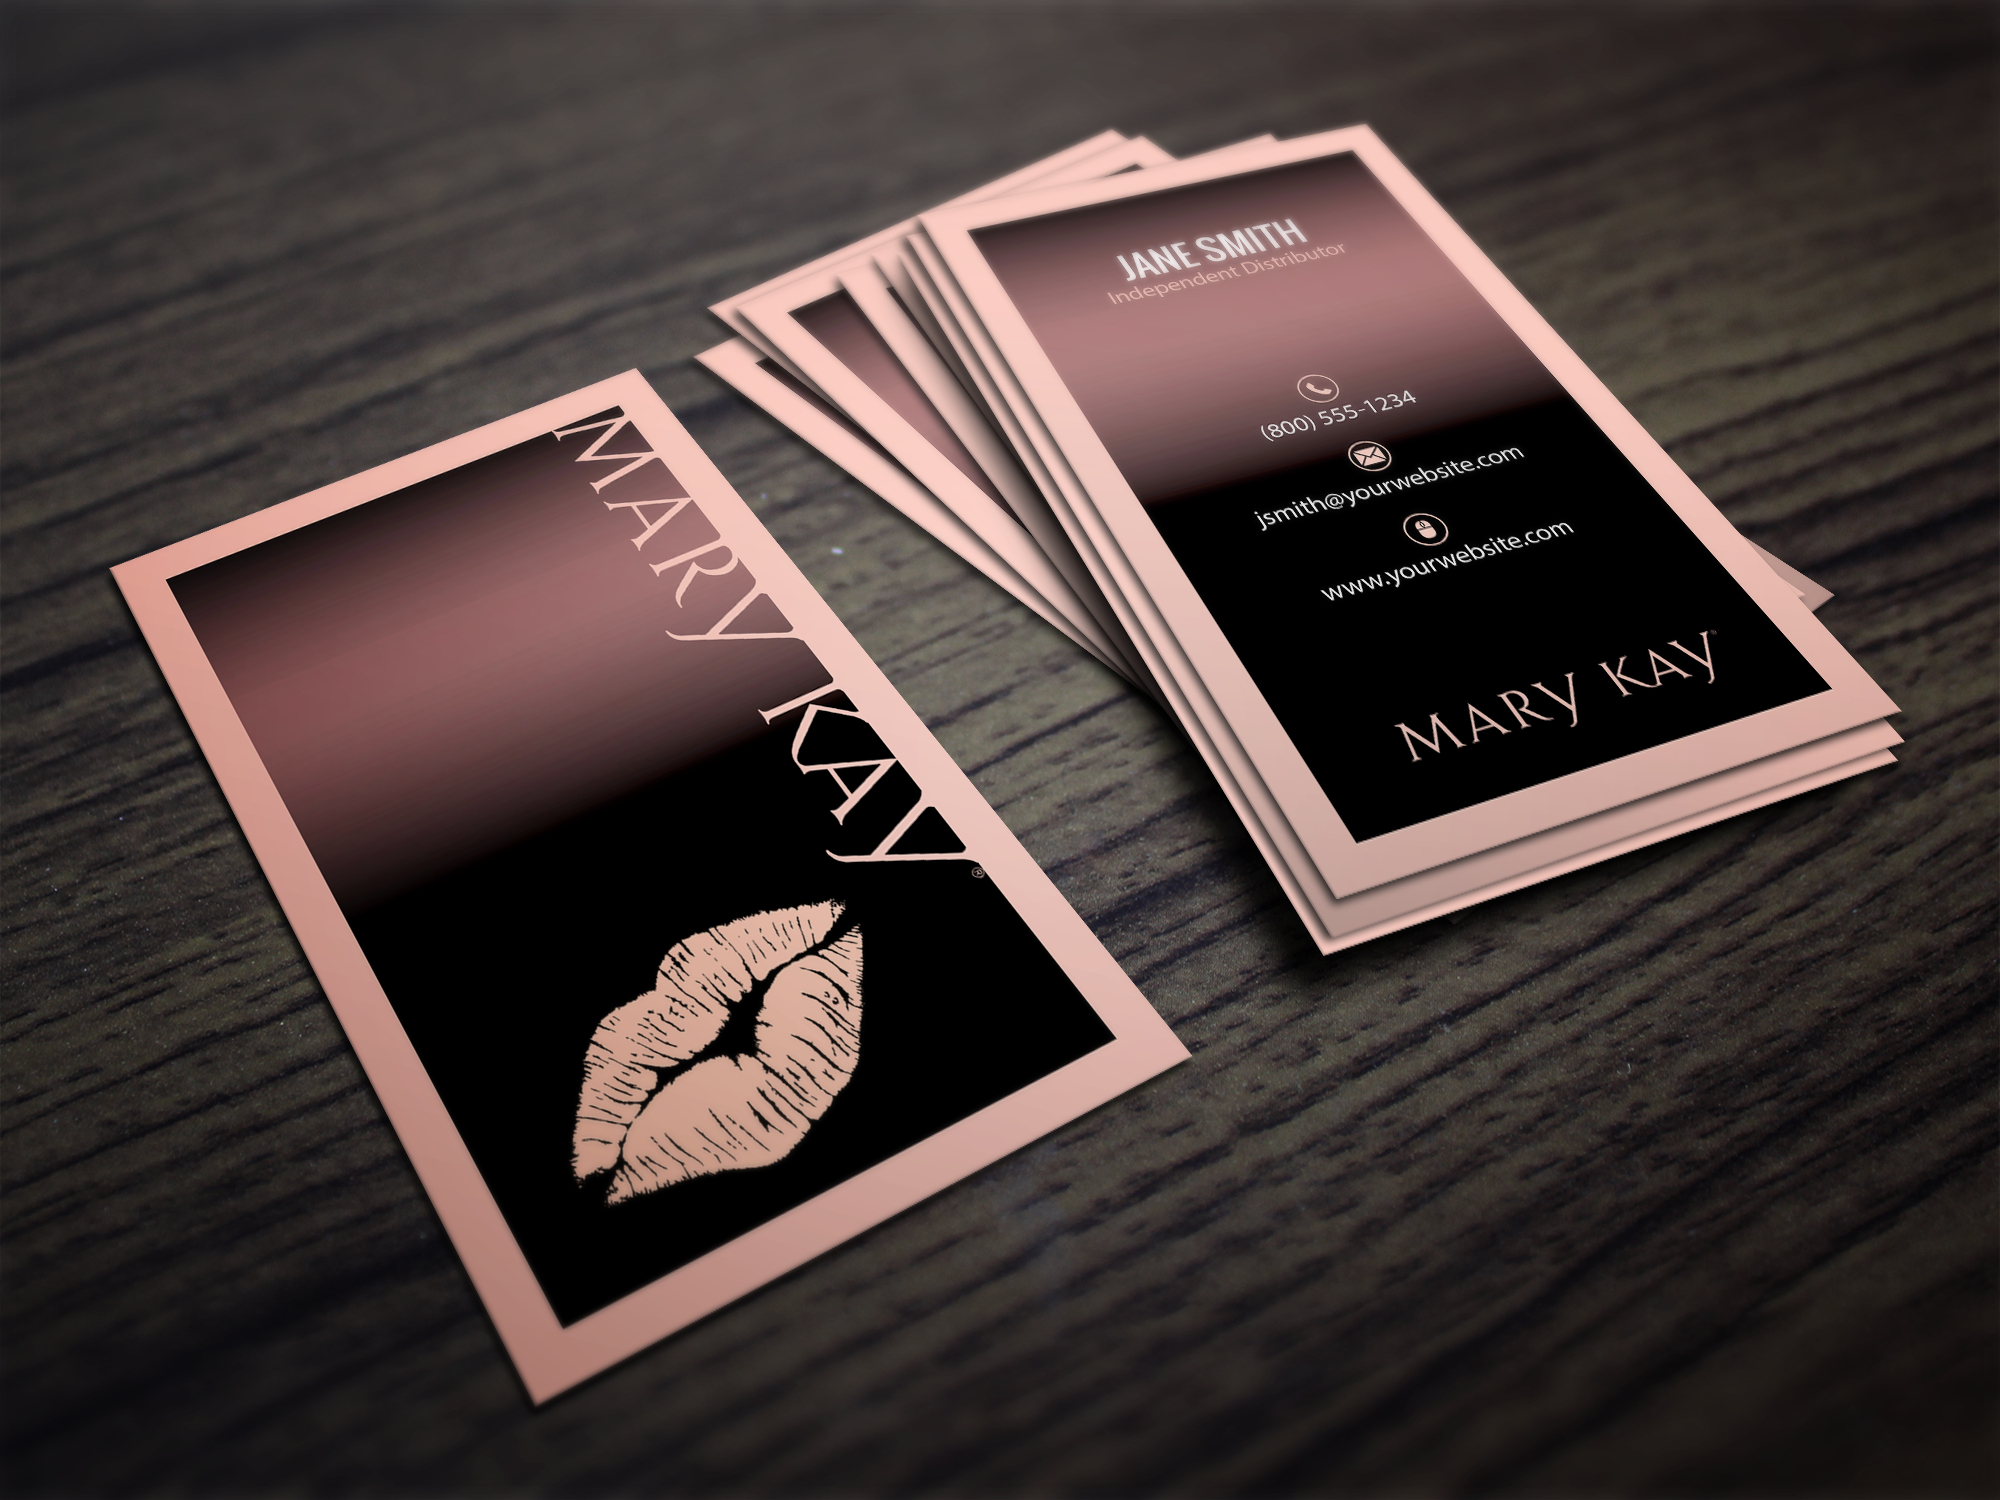 Mary Kay Business Cards | Mary Kay | Mary Kay, Mary Kay With Mary Kay Business Cards Templates Free